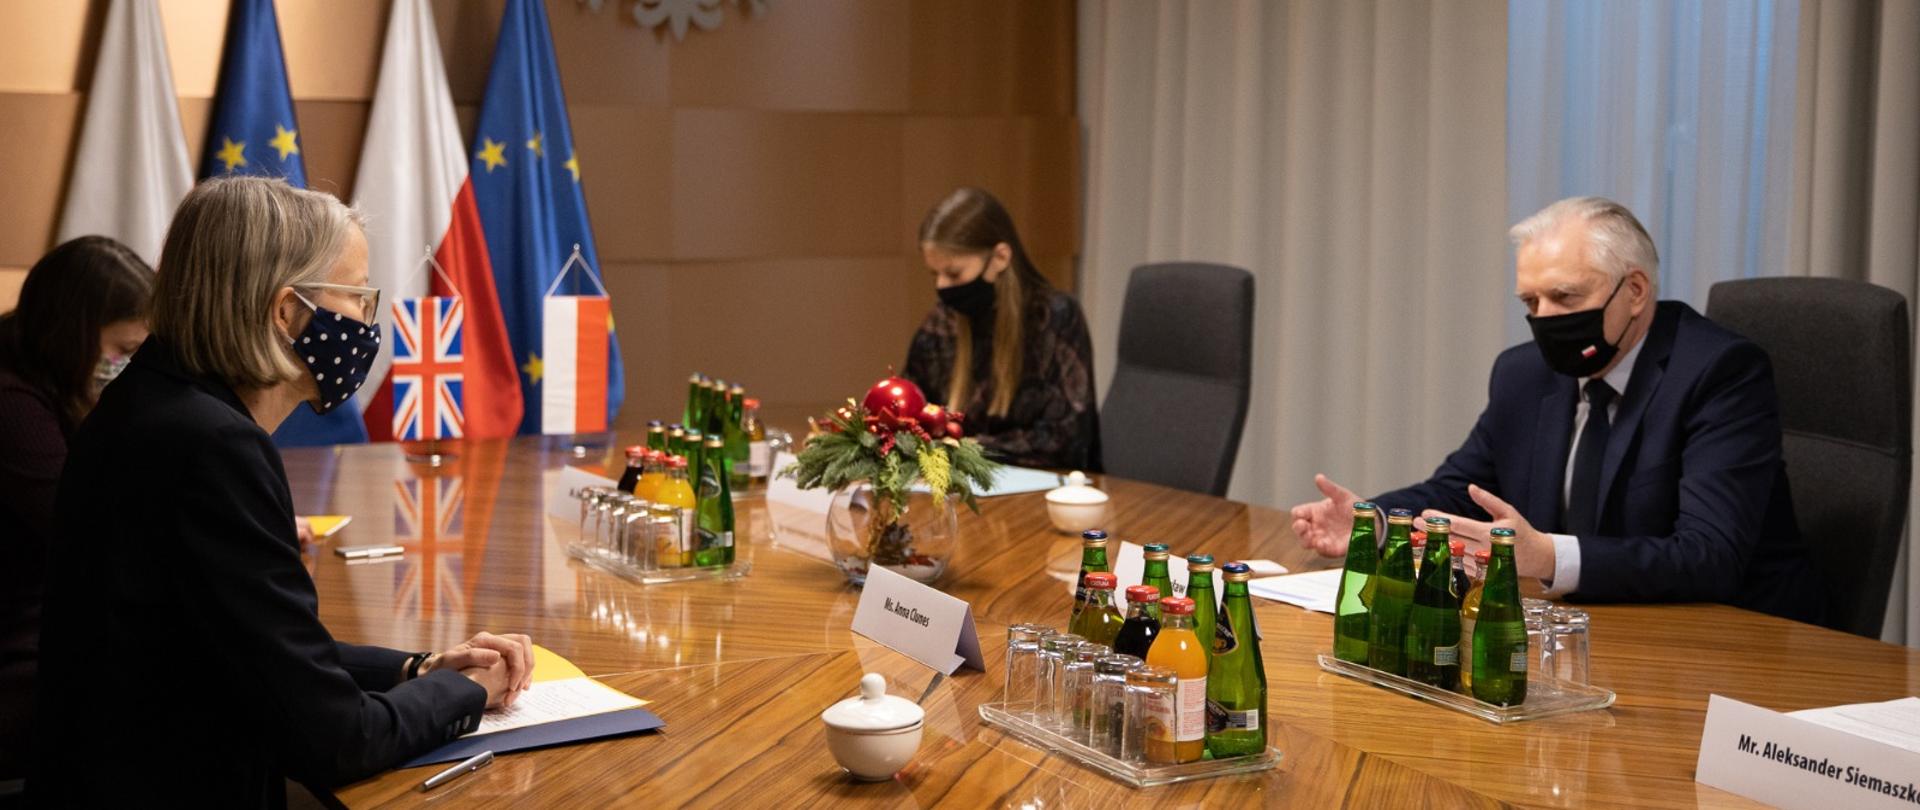 Jarosław Gowin podczas rozmowy z ambasador Wielkiej Brytanii w Polsce Anną Clunes. Siedzą naprzeciwko siebie przy dużym stole konferencyjnym w towarzystwie swoich delegacji.